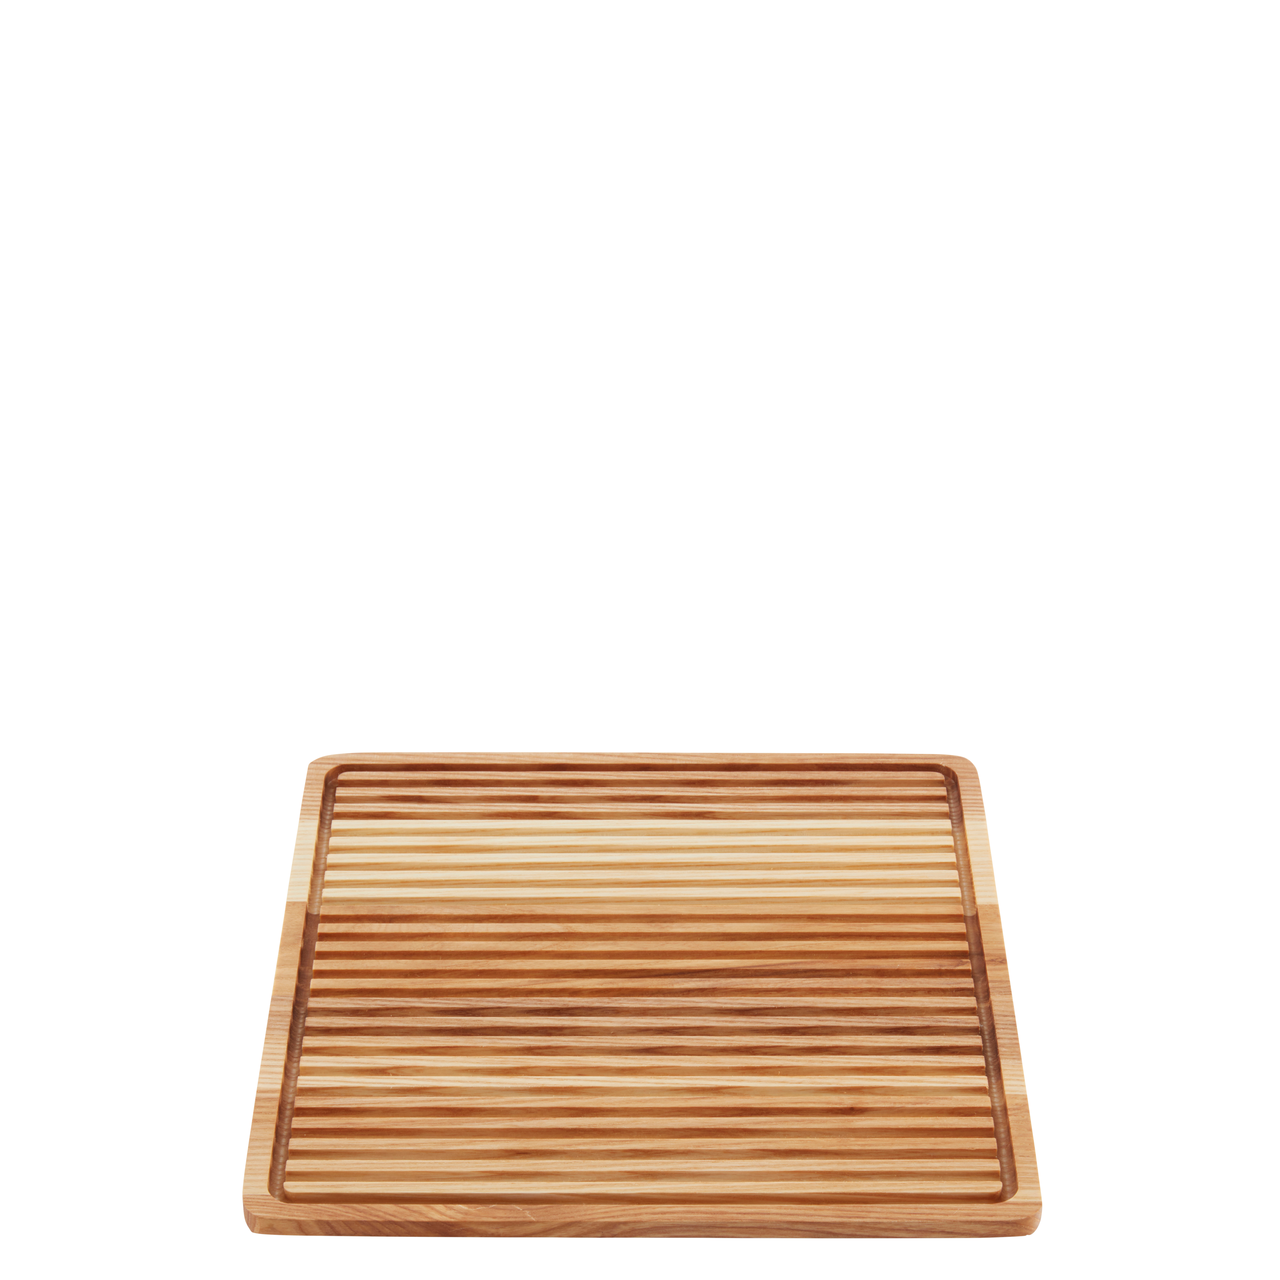 Breadboard wood (ashwood) square 25x25cm